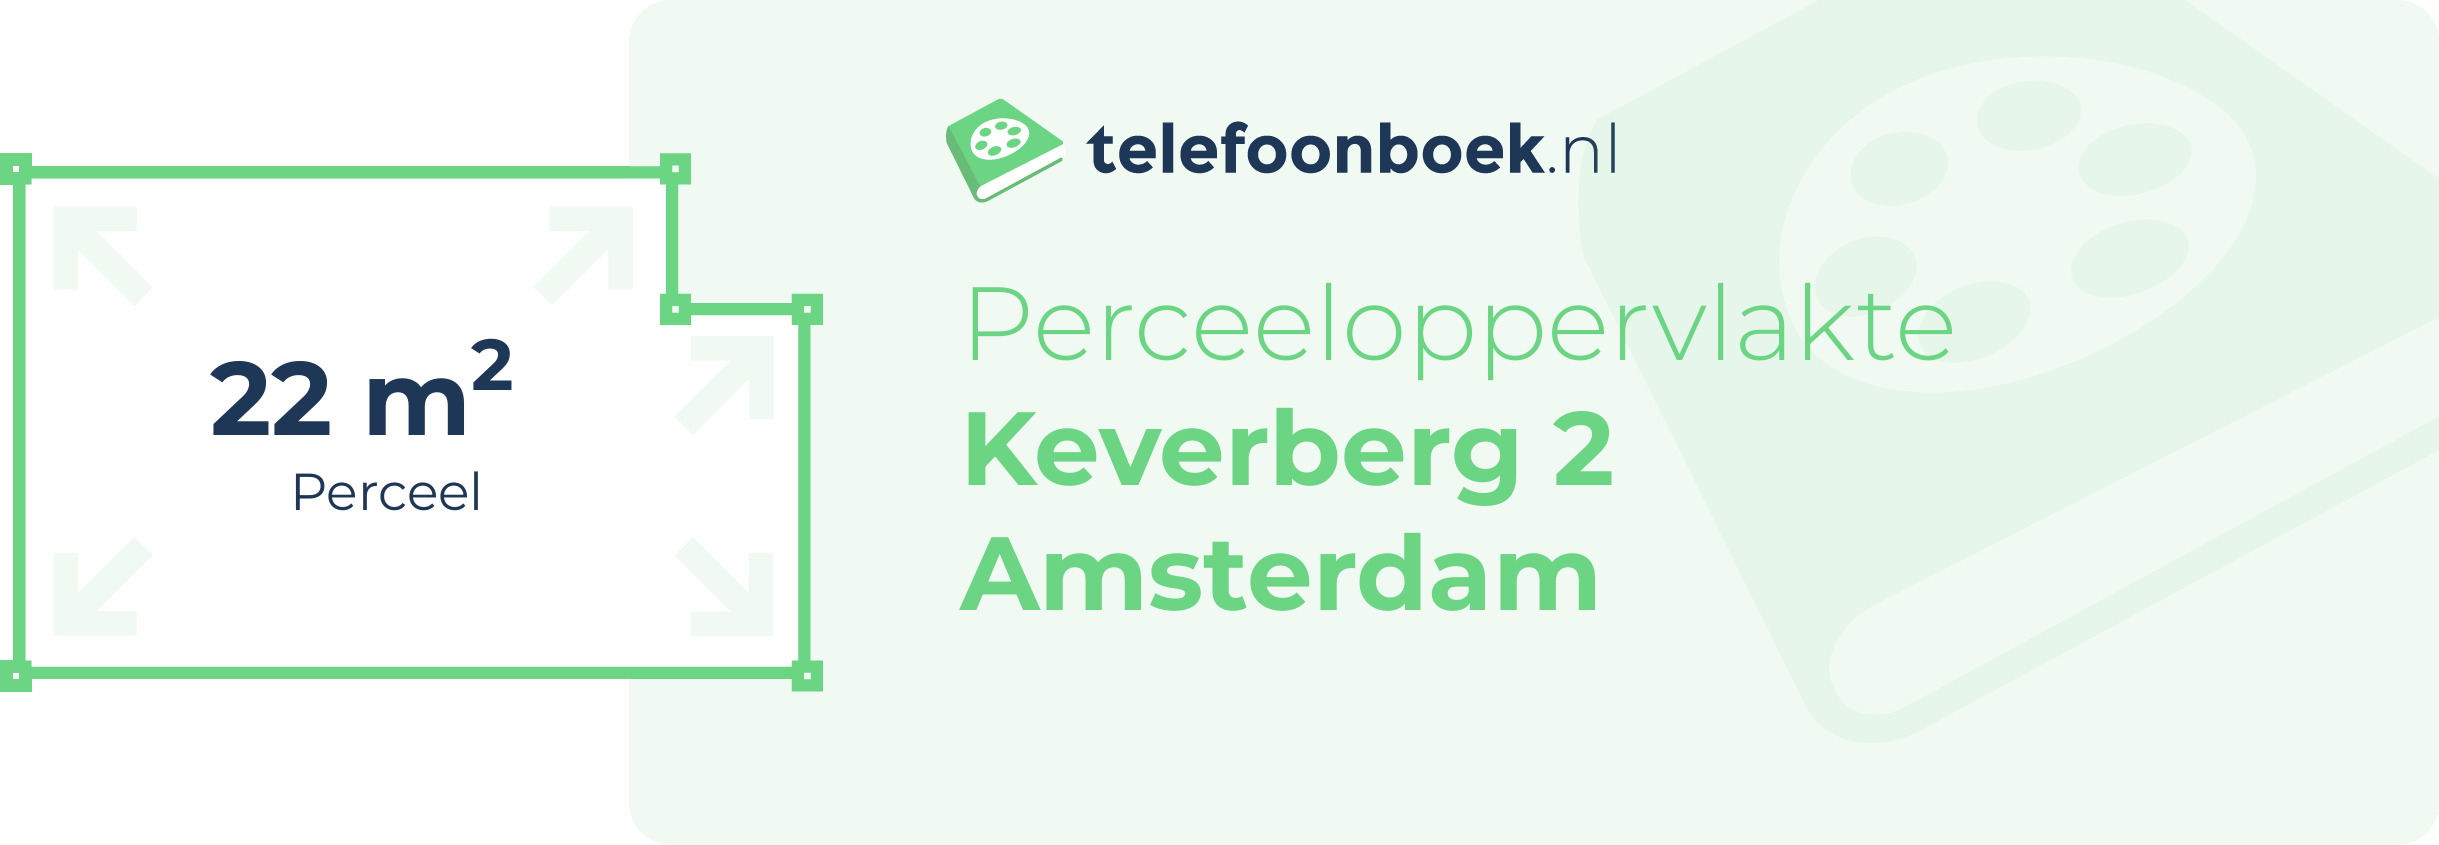 Perceeloppervlakte Keverberg 2 Amsterdam